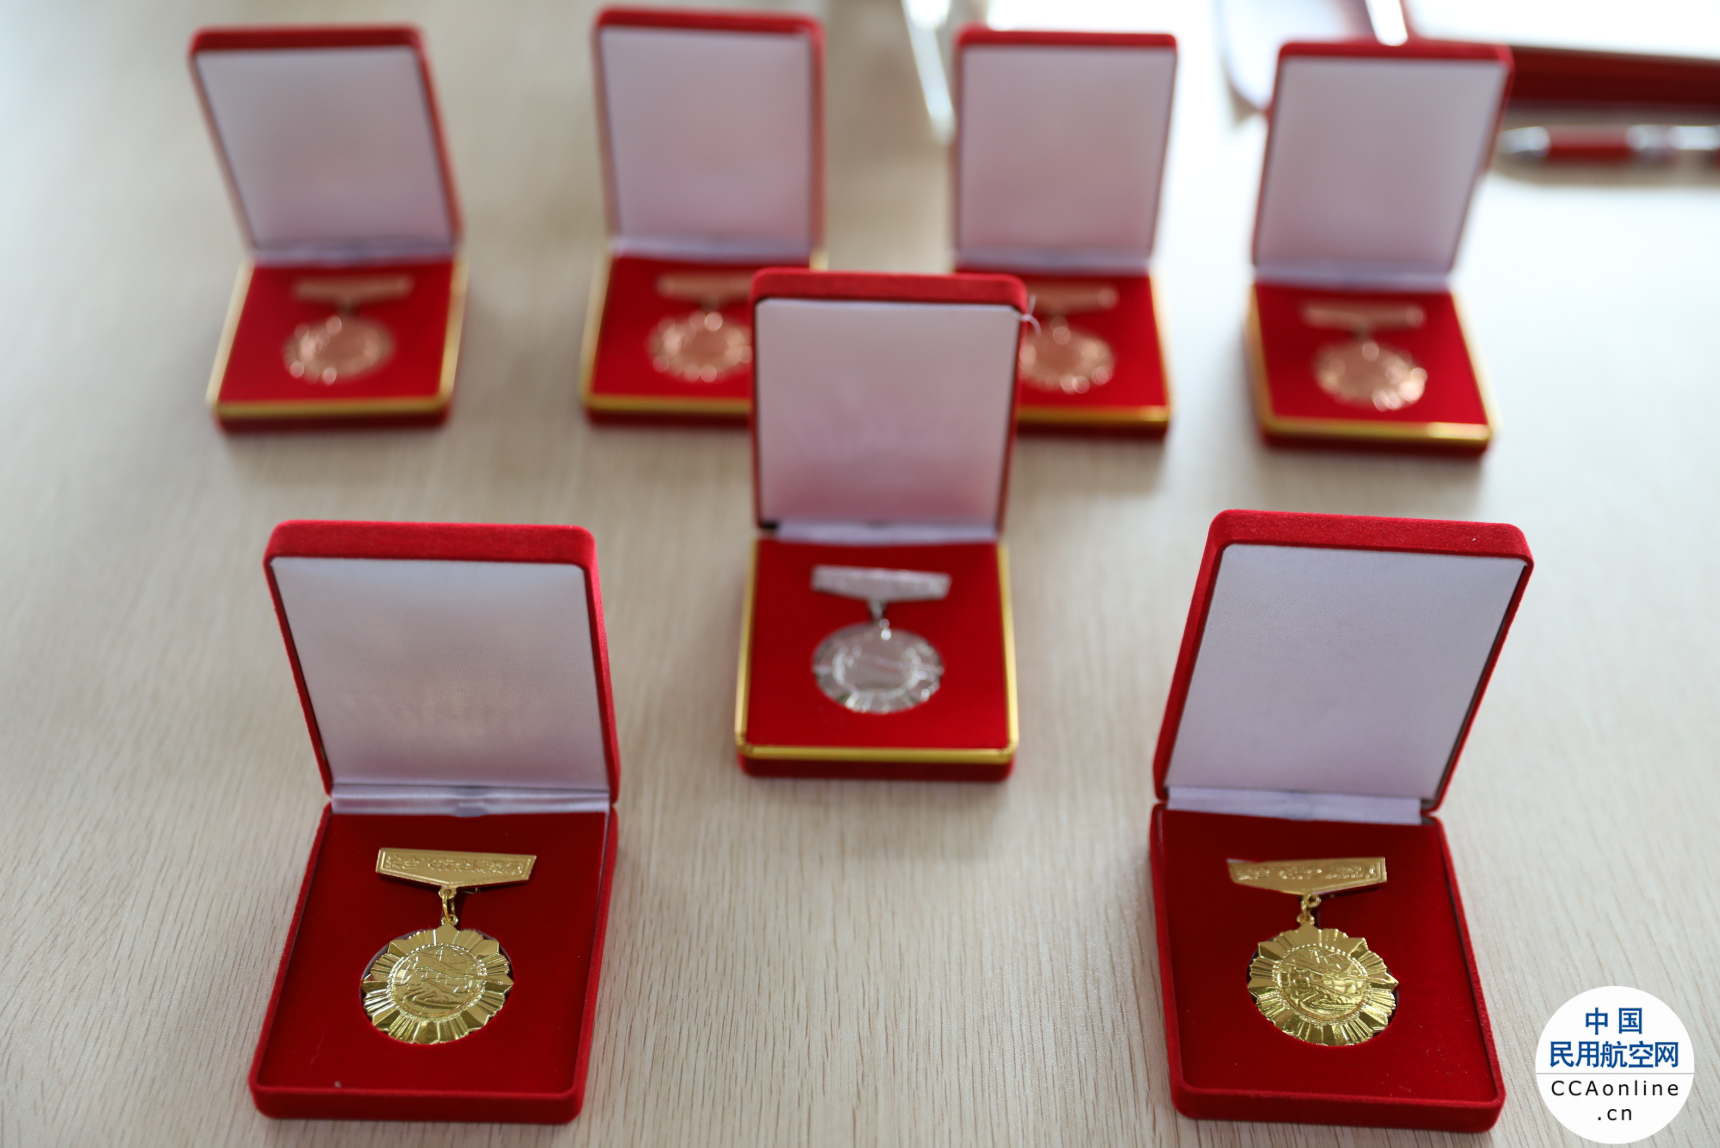 祥鹏航空8名飞行员获颁安全飞行奖章